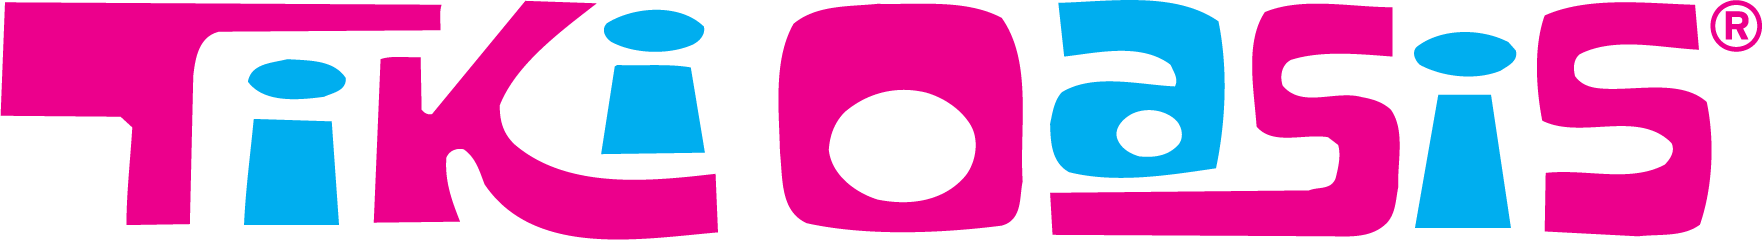 Fikir Oasis Logo PNG image